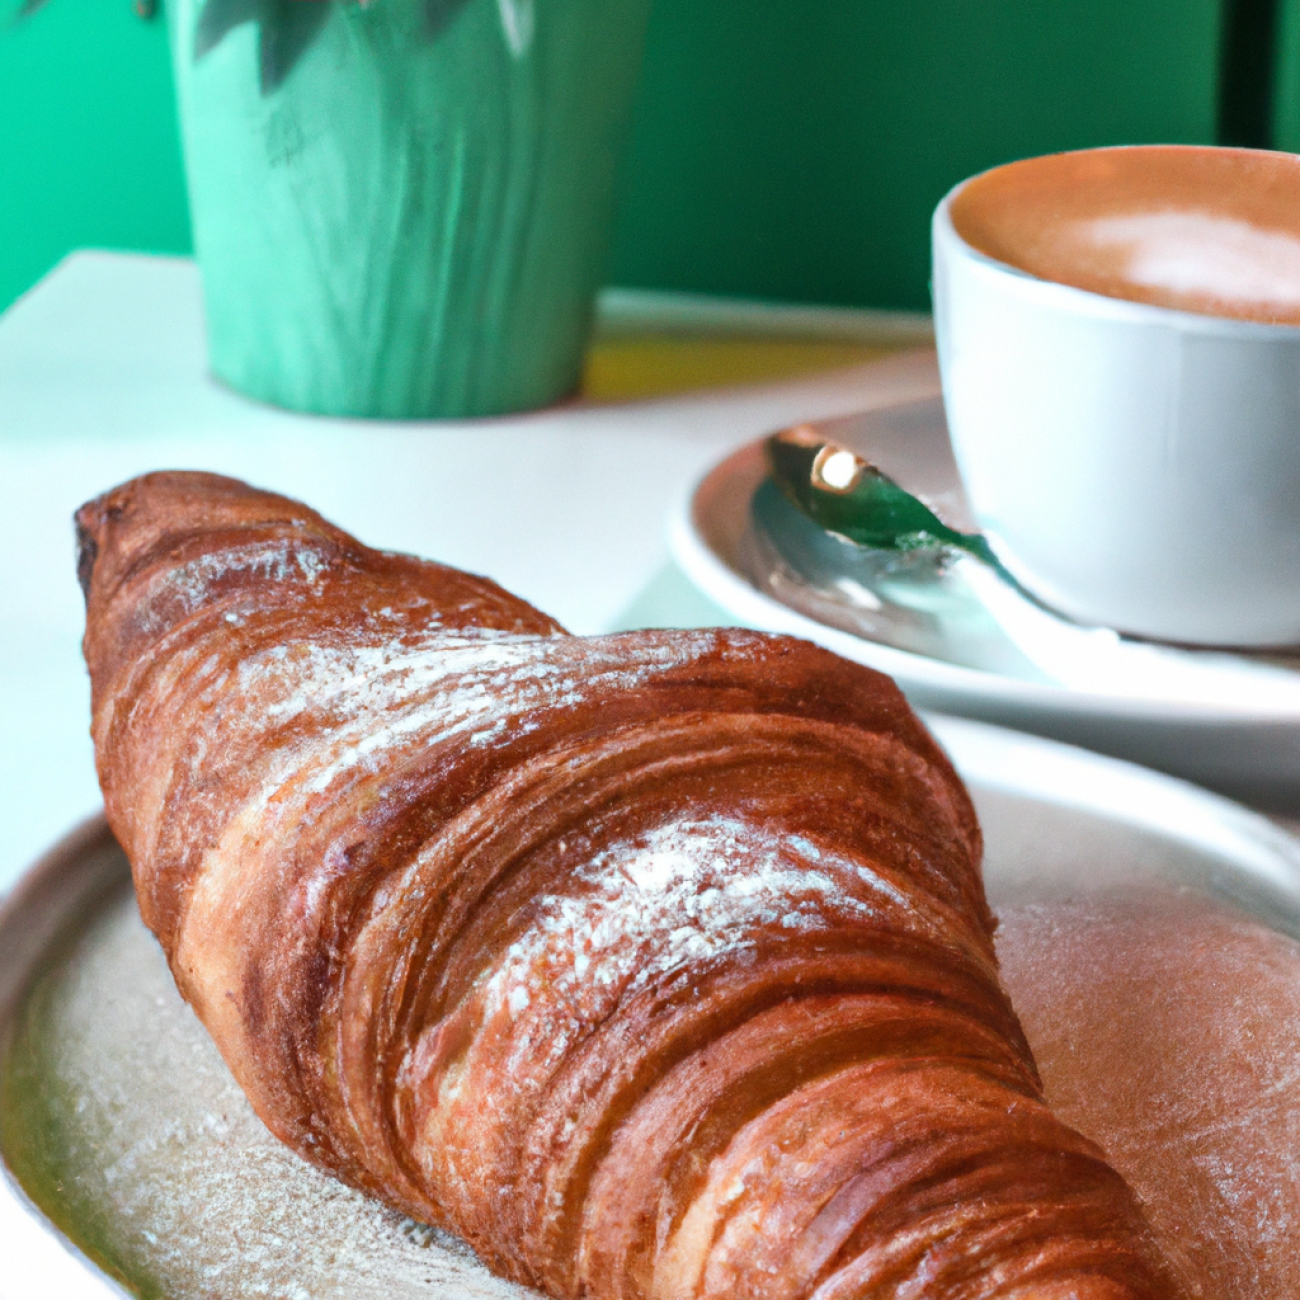 6. Alchymista Café: Skvělá volba pro milovníky originálních croissantů a kvalitního kávy